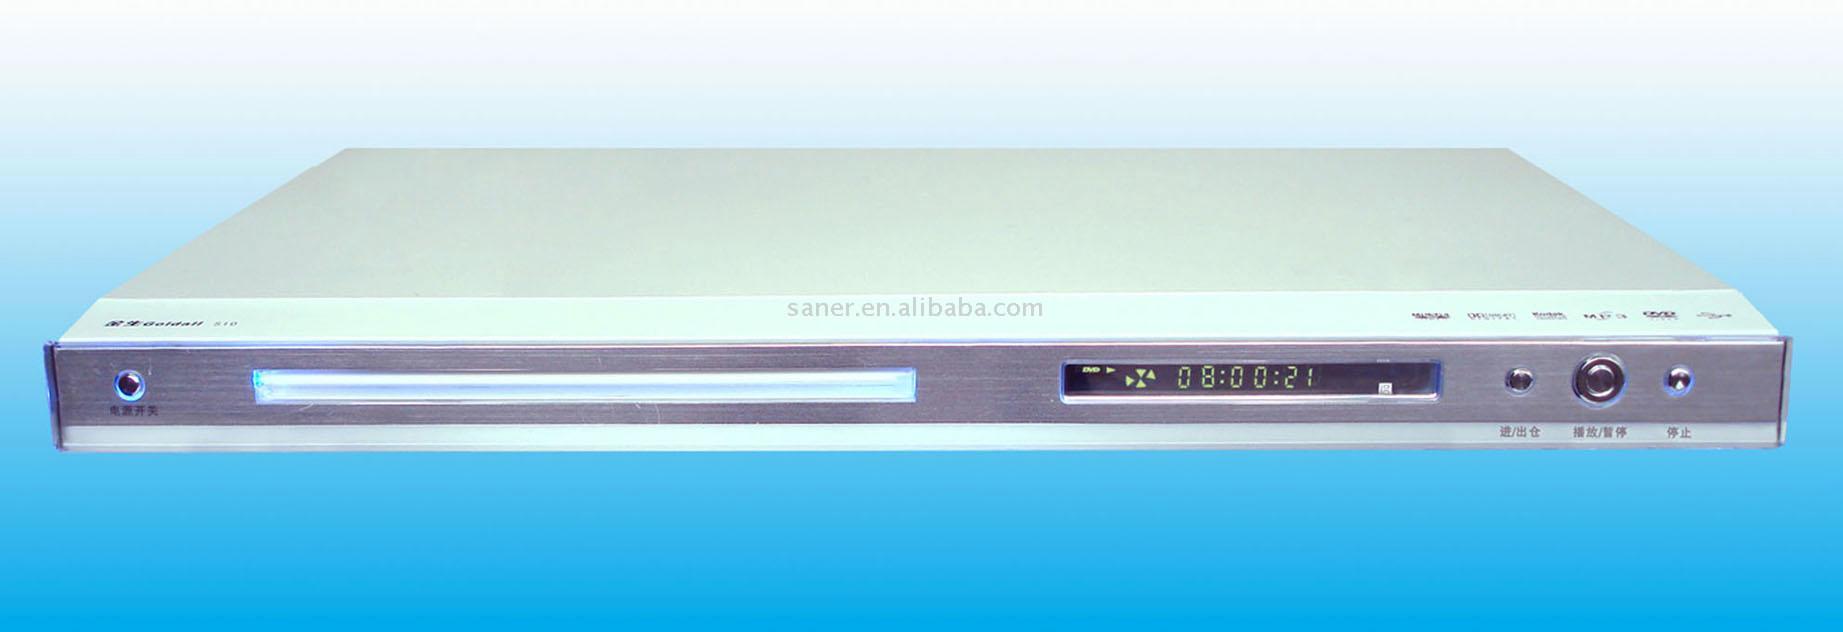 DVD-Player + MPEG4 + USB + VGA (DVD-Player + MPEG4 + USB + VGA)